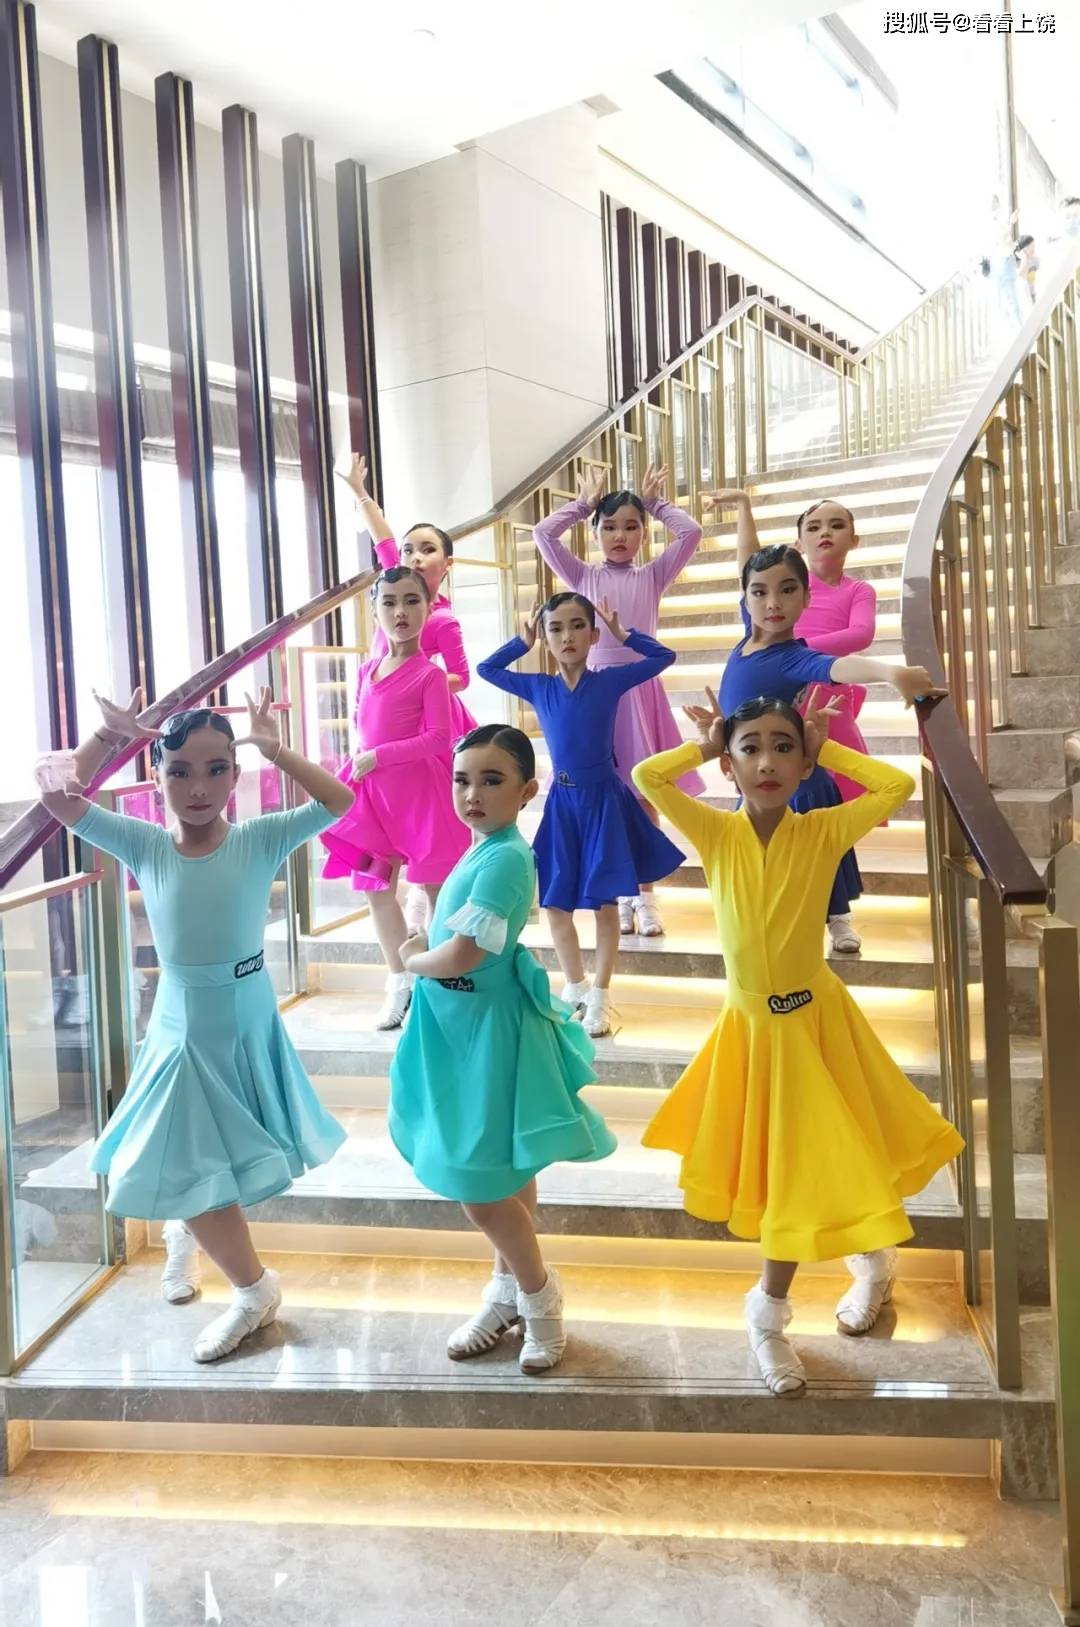 2021黑池舞蹈节杭州锦标赛暨"华之舞"第八届全国青少年舞蹈锦标赛获